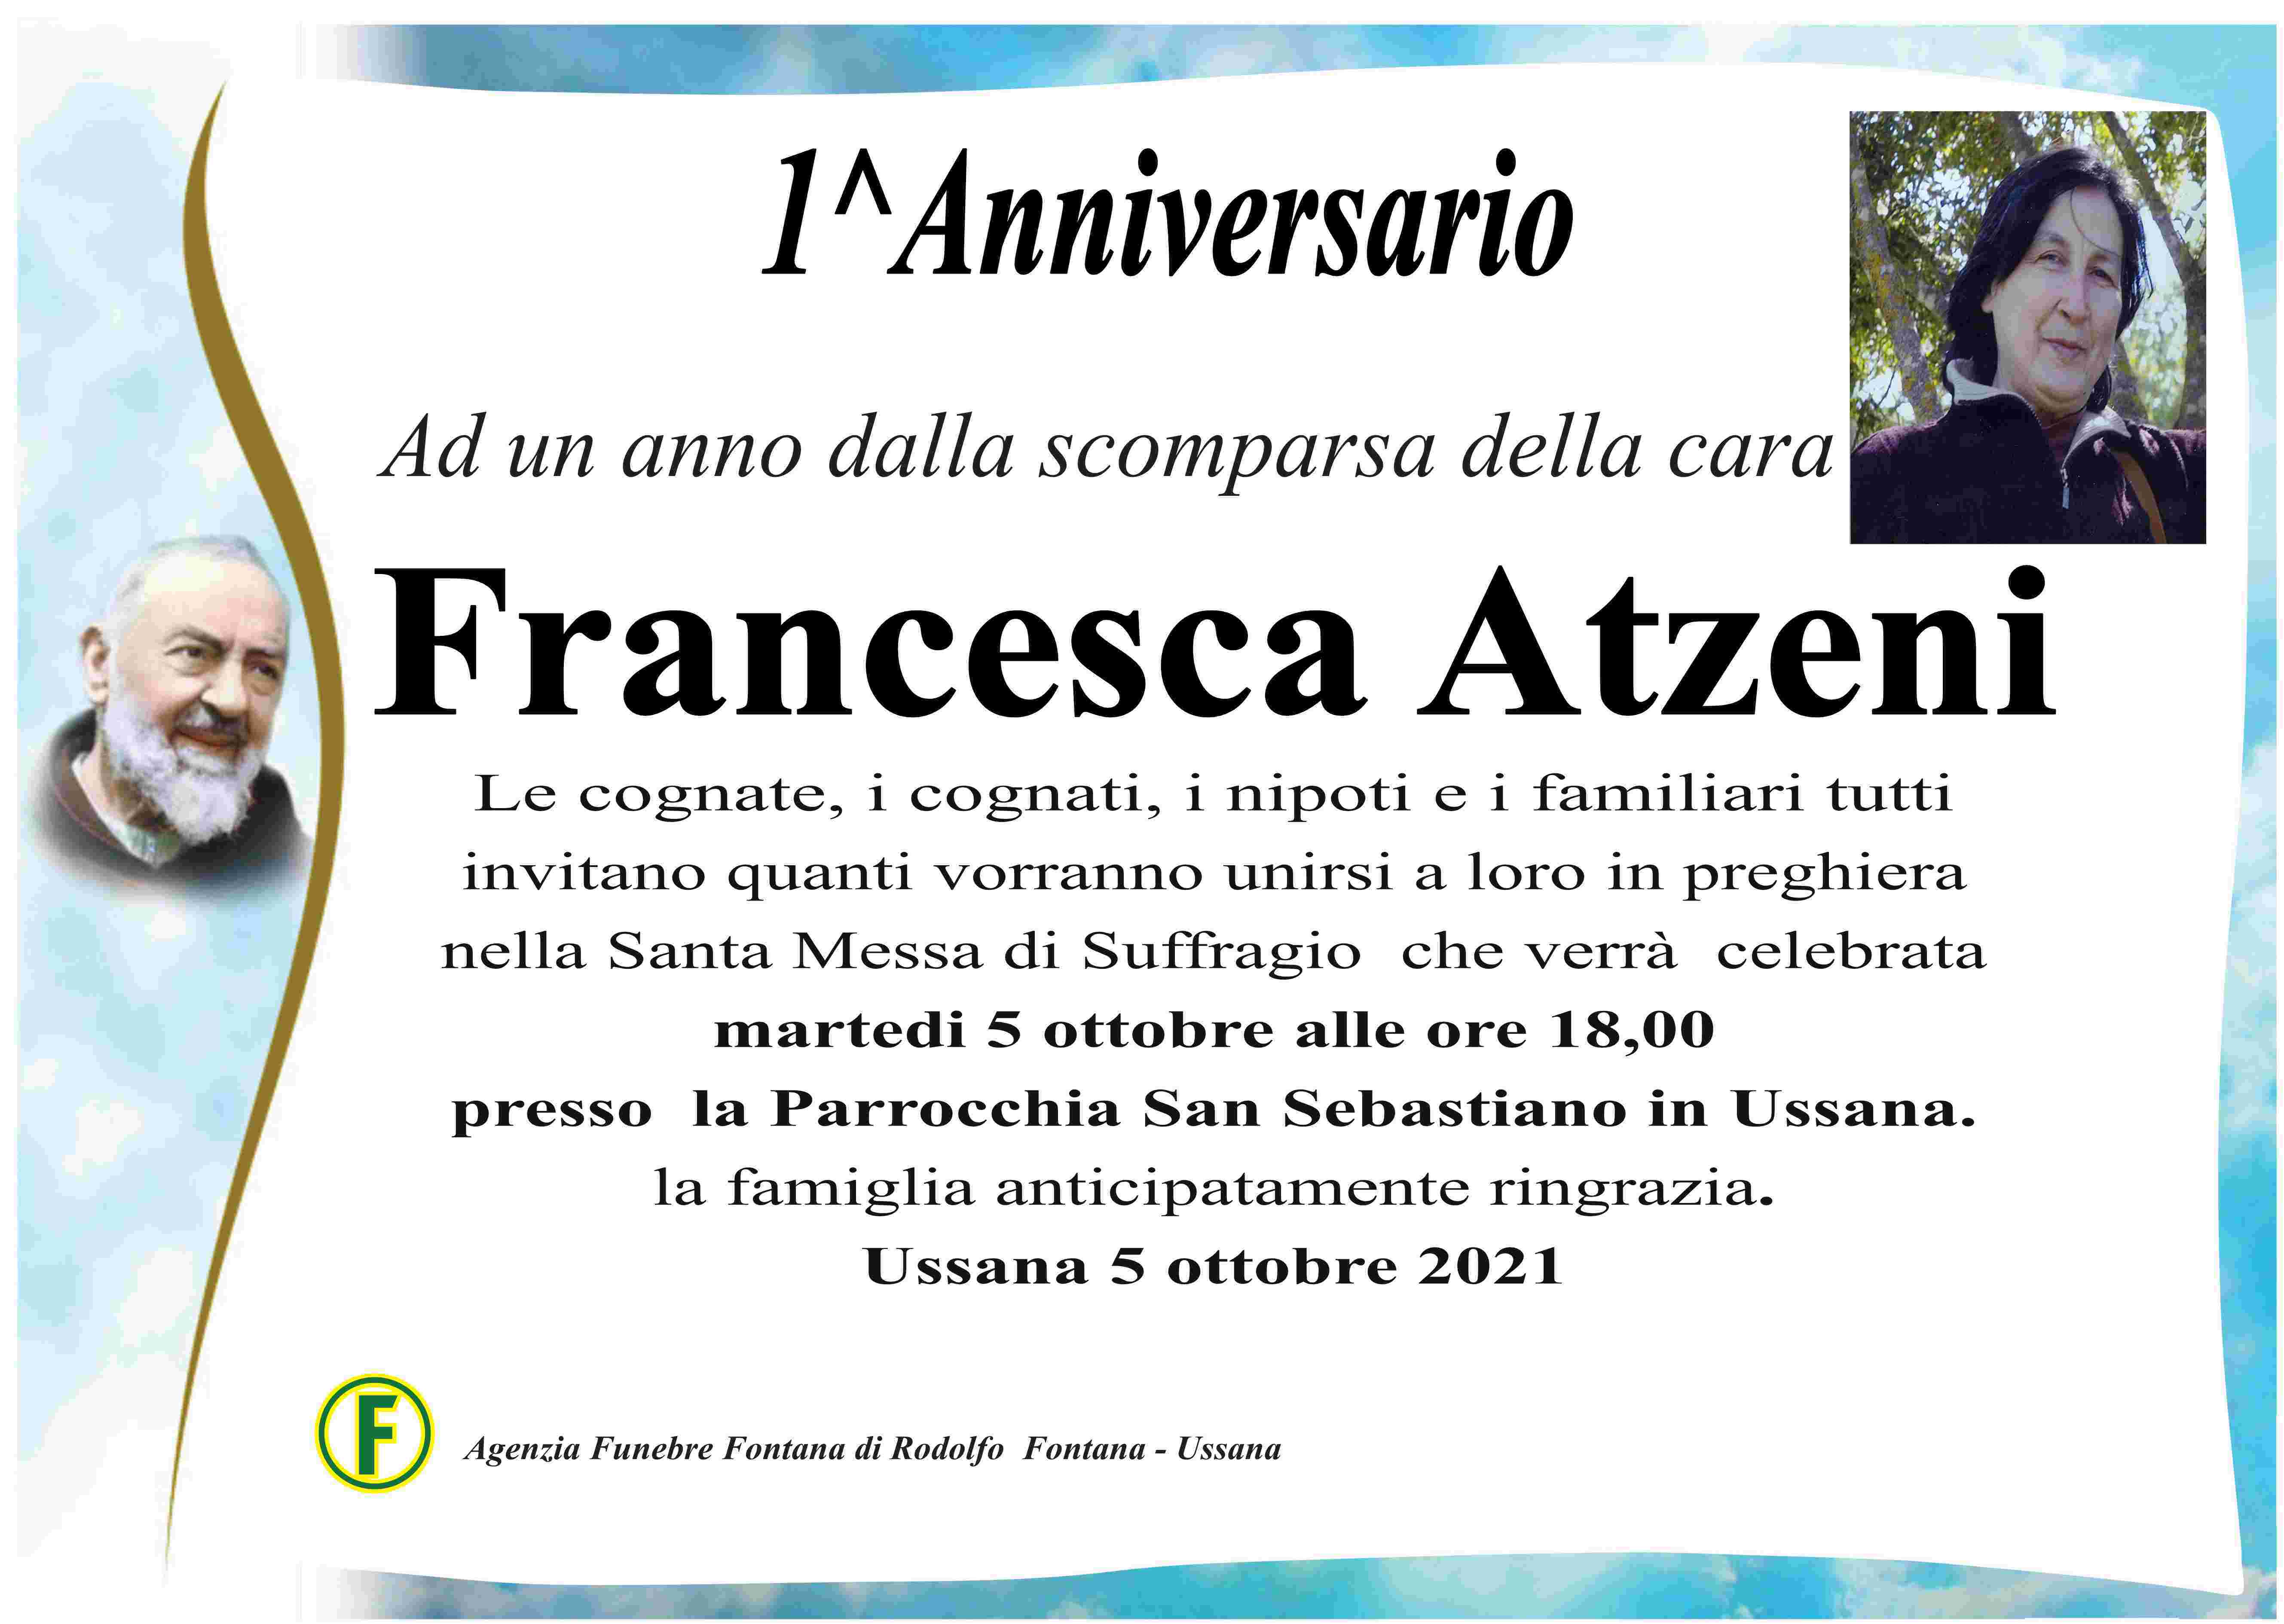 Francesca Atzeni